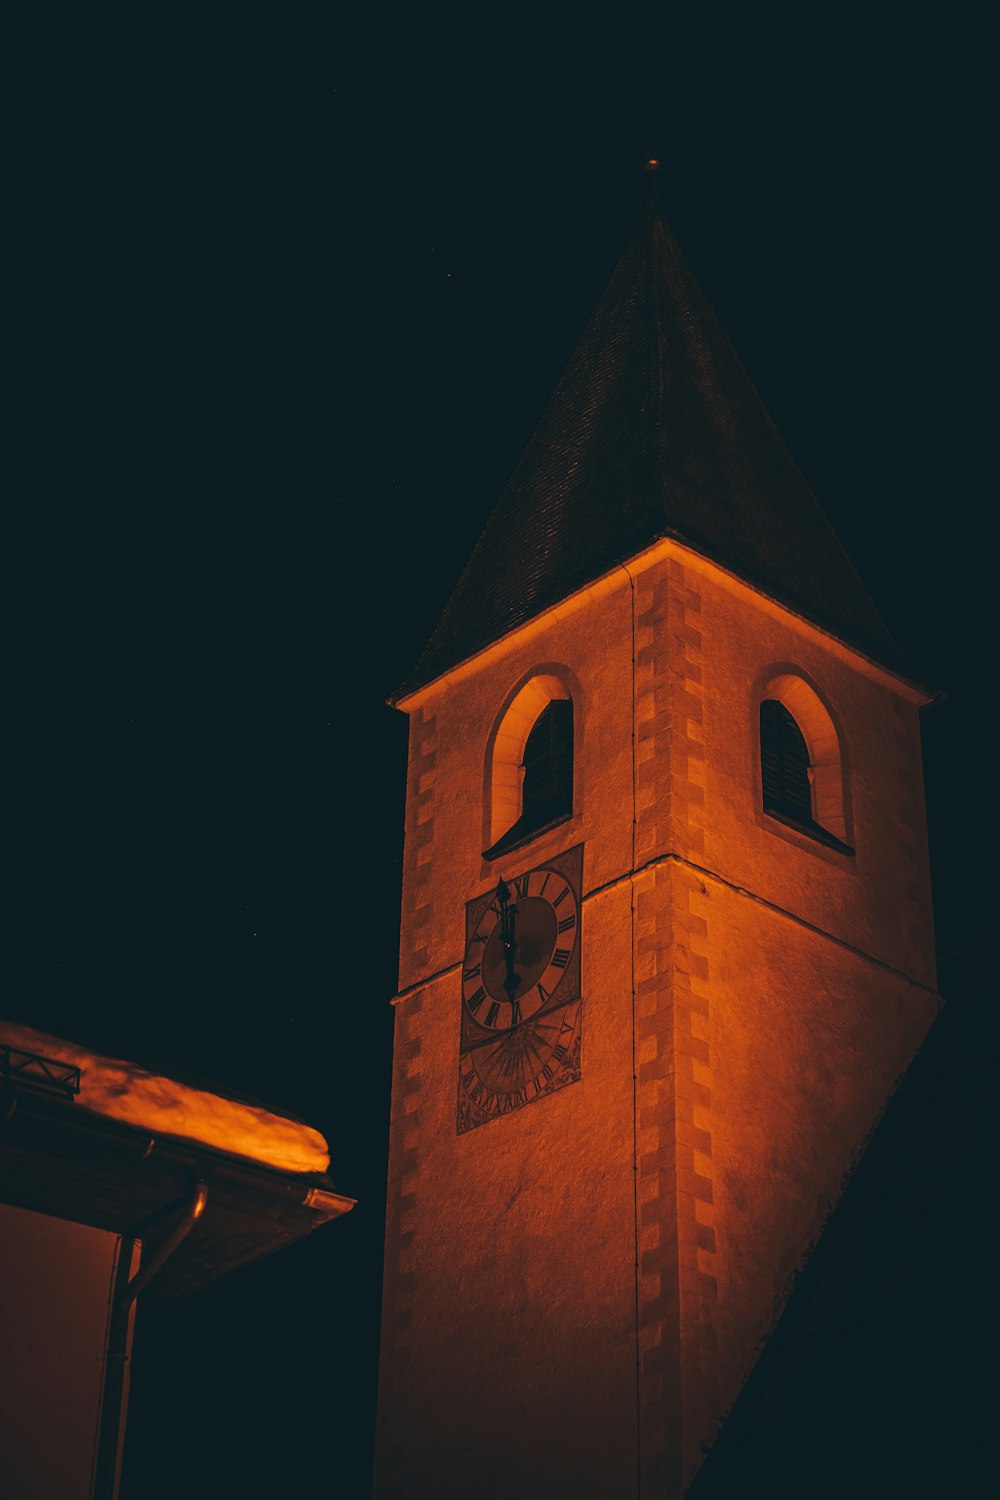 uma torre do relógio iluminada à noite